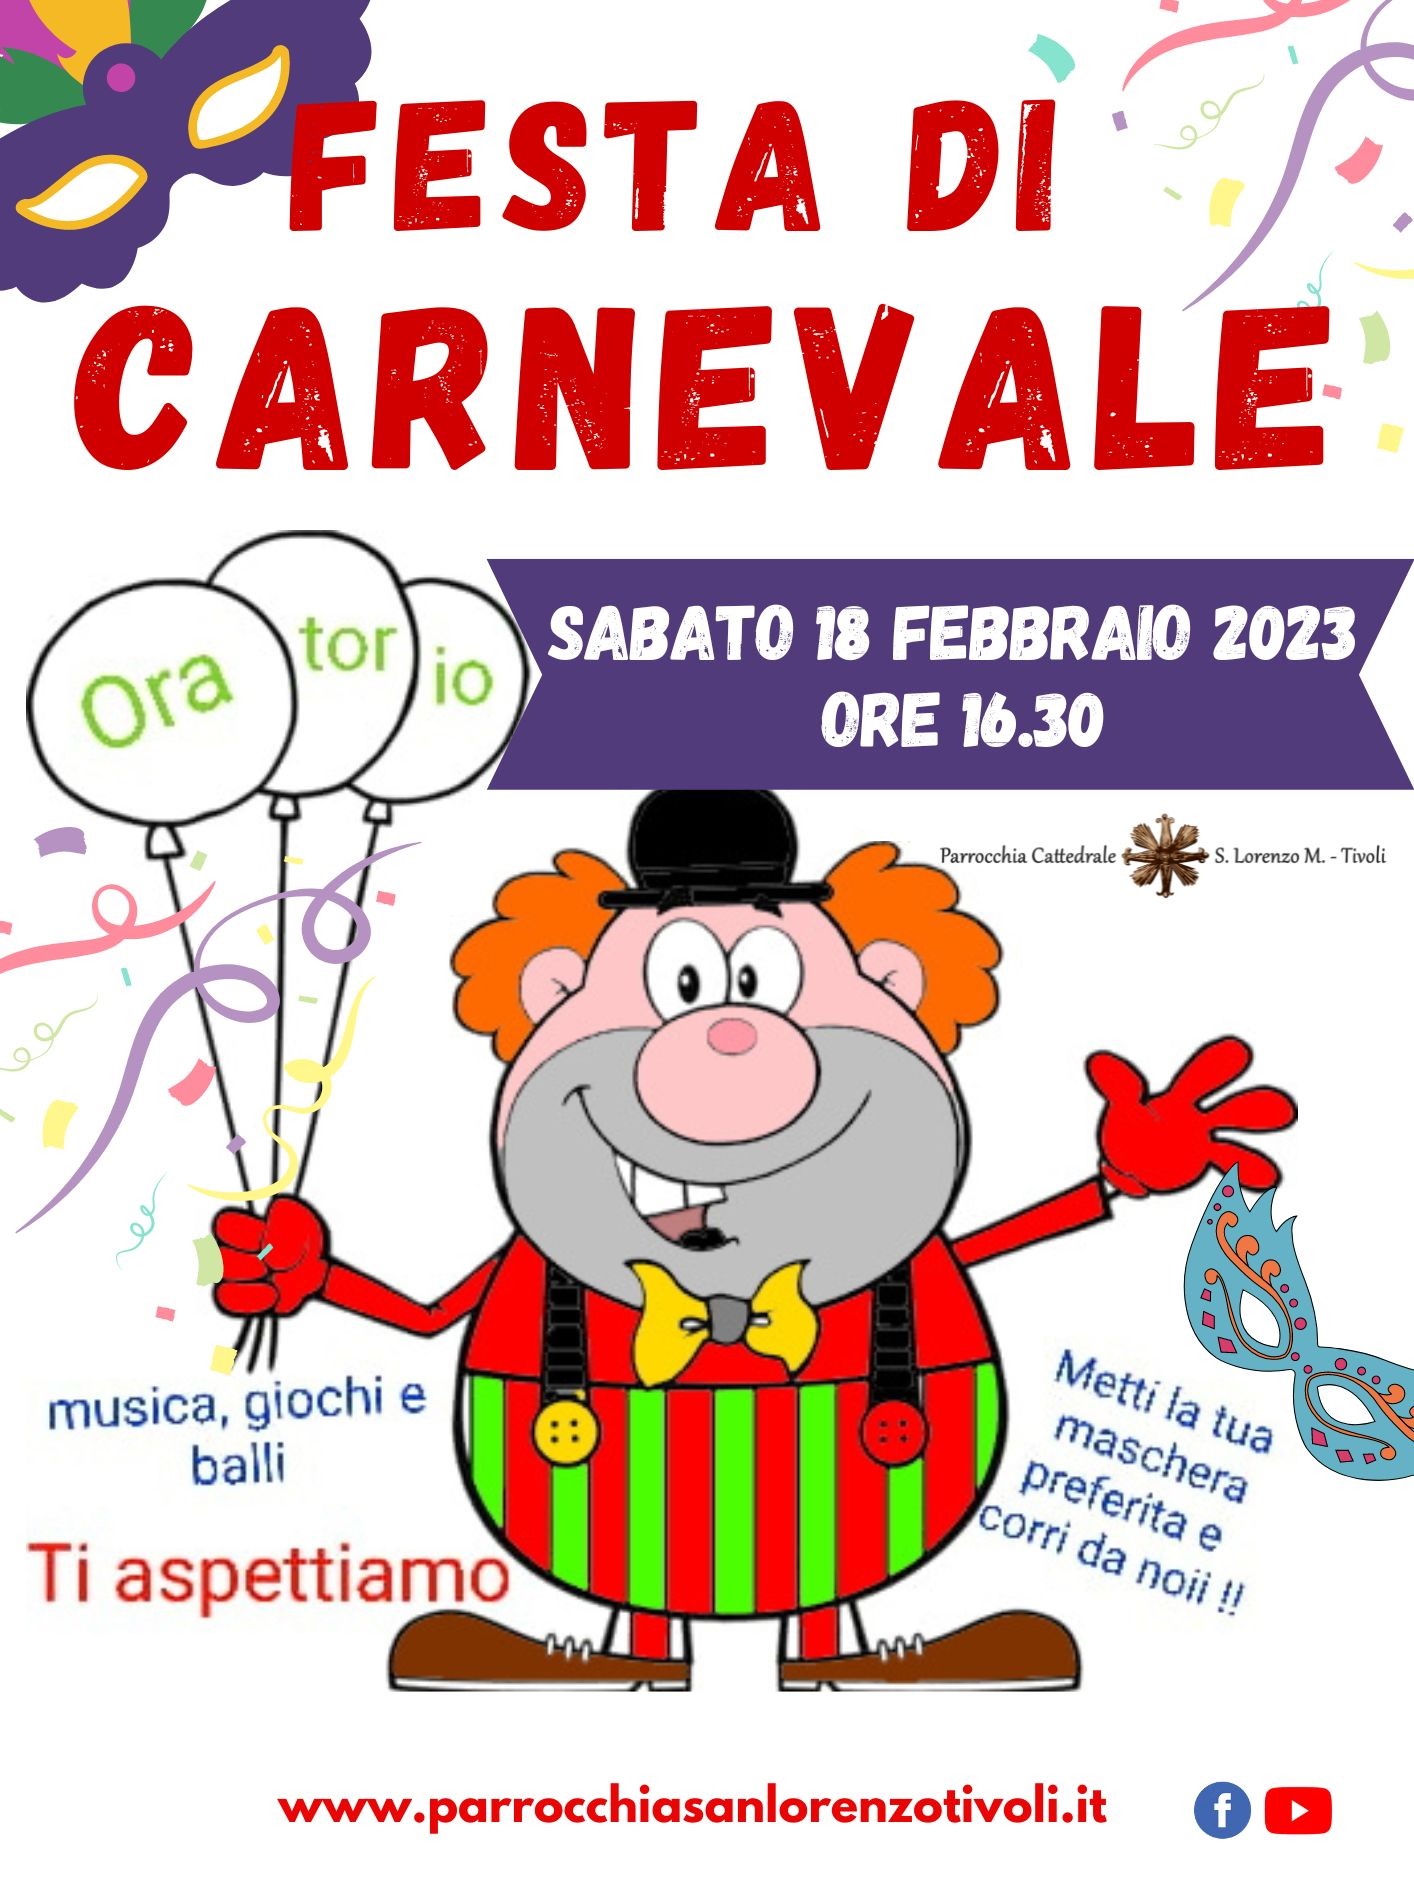 Festa di Carnevale nei locali dell’Oratorio sabato 18 febbraio 2023